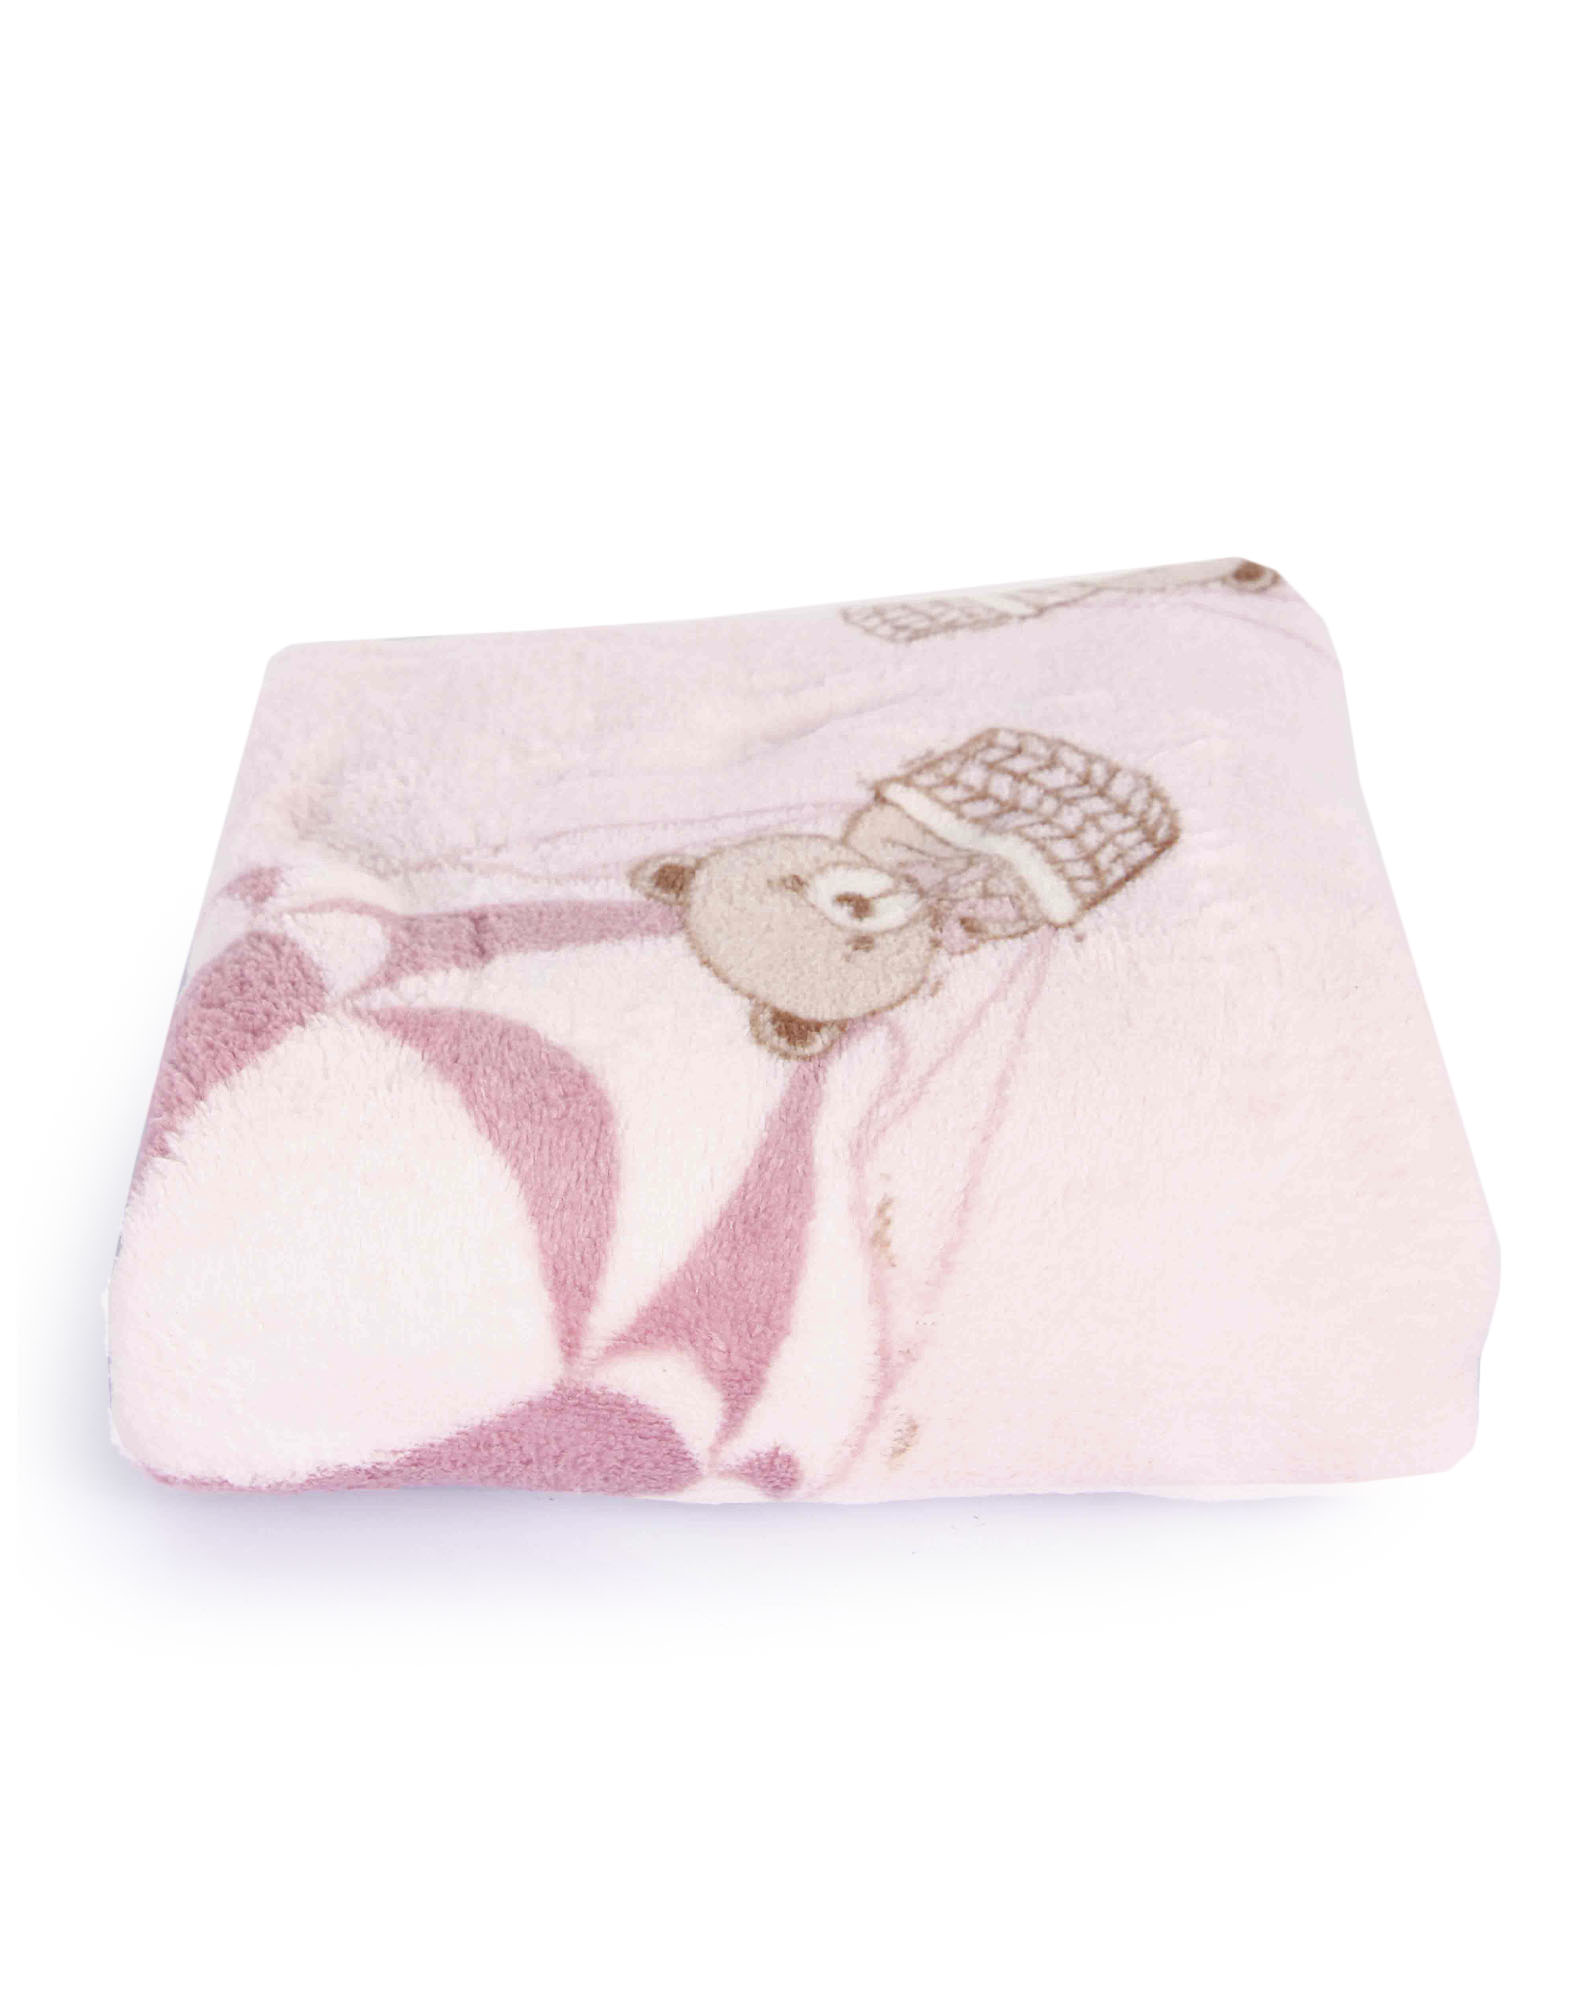 705869002 cobertor manta bebê estampada camesa rosa u e8d